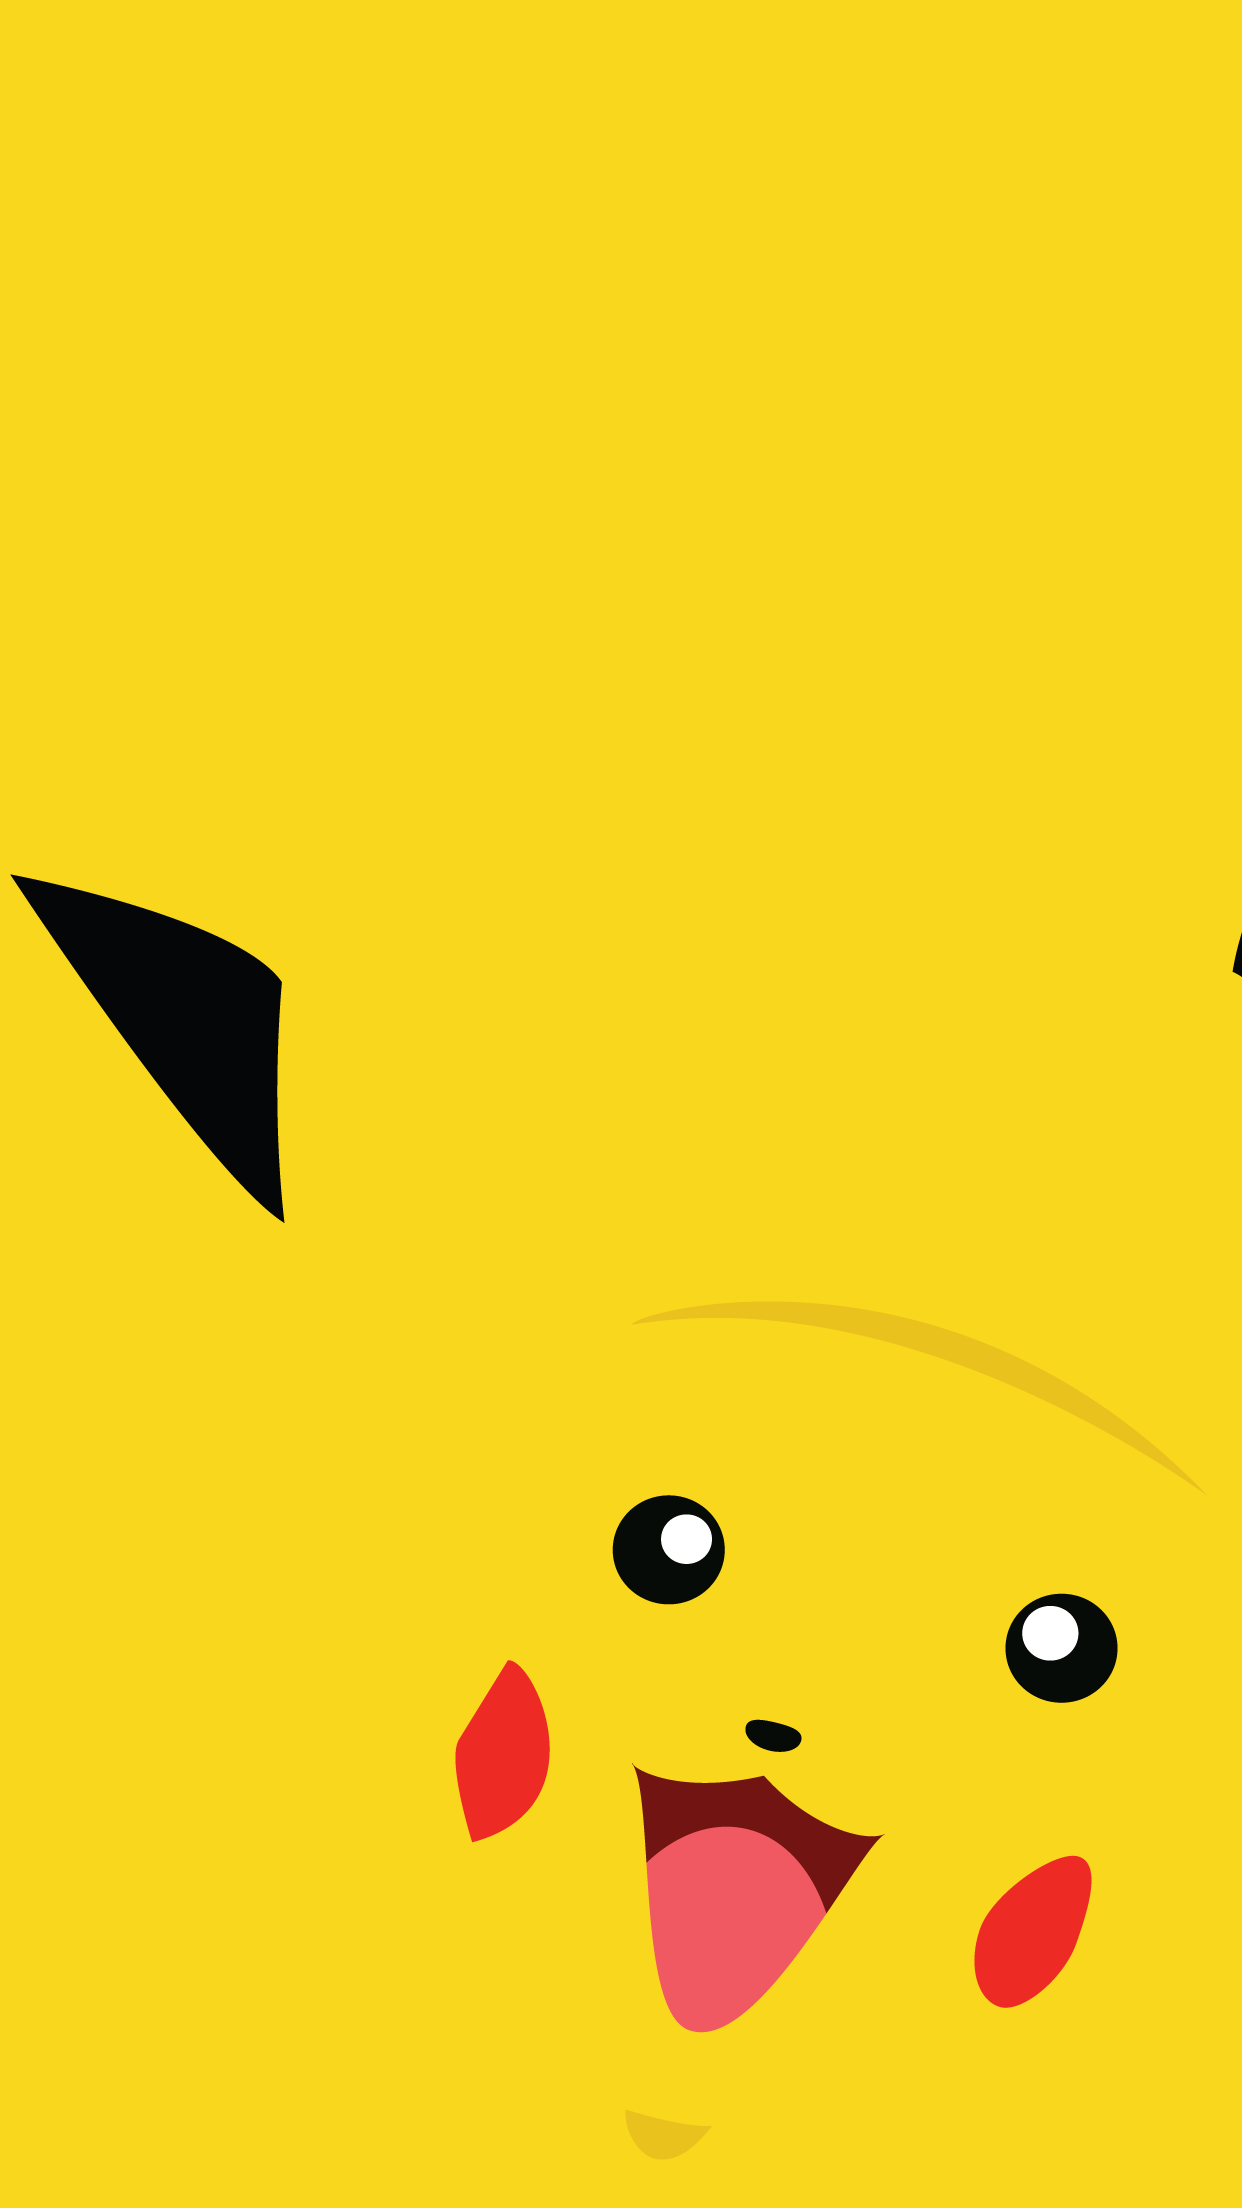 Pikachu Minimalist PokeMon Wallpapers